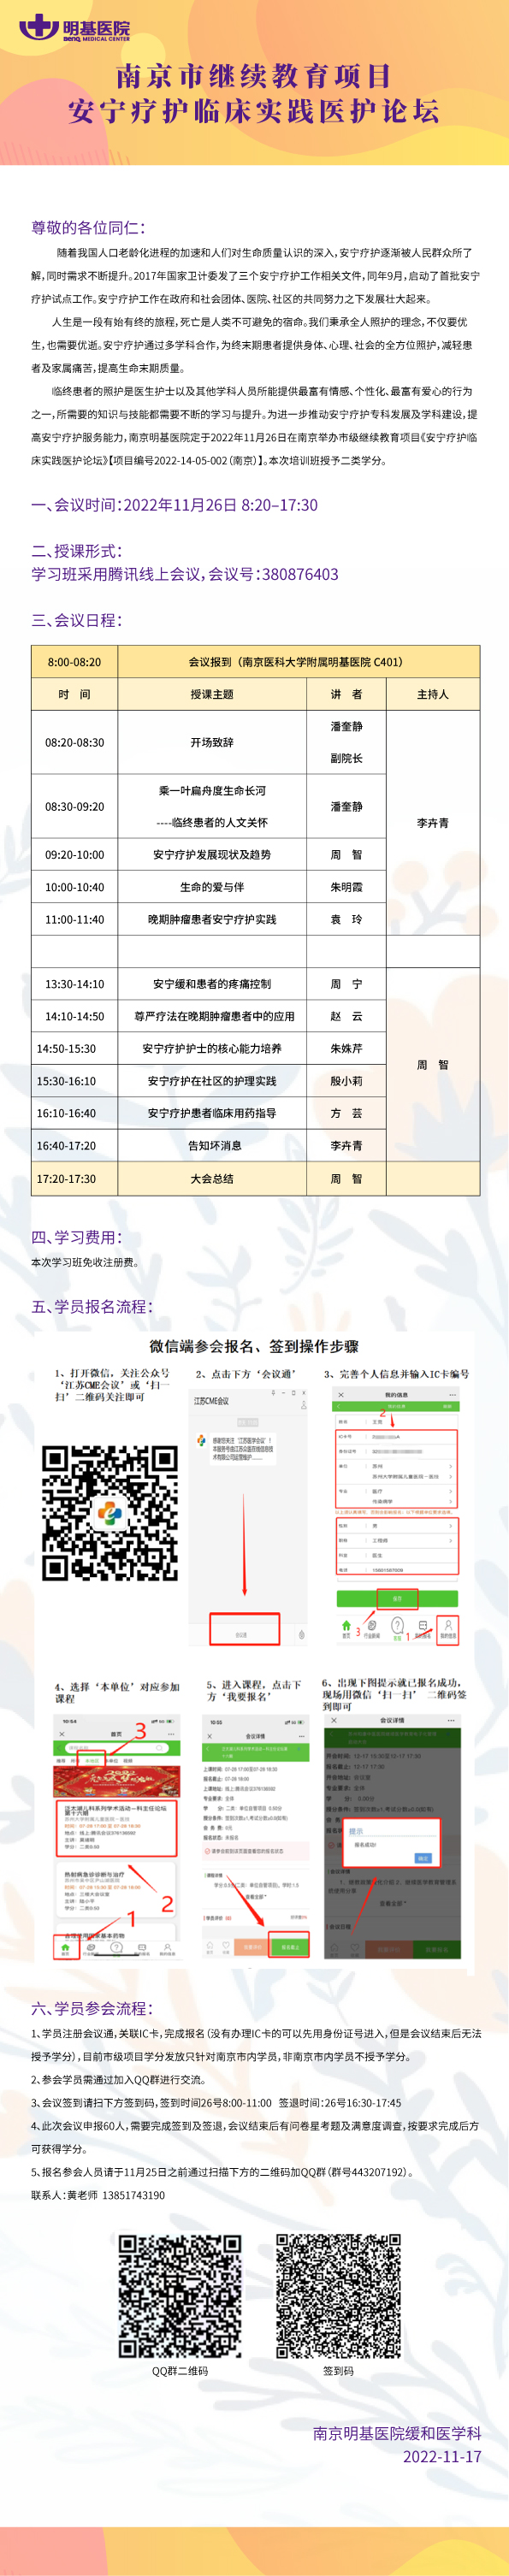 南京市继续教育项目《安宁疗护临床实践医护论坛》的通知.jpg